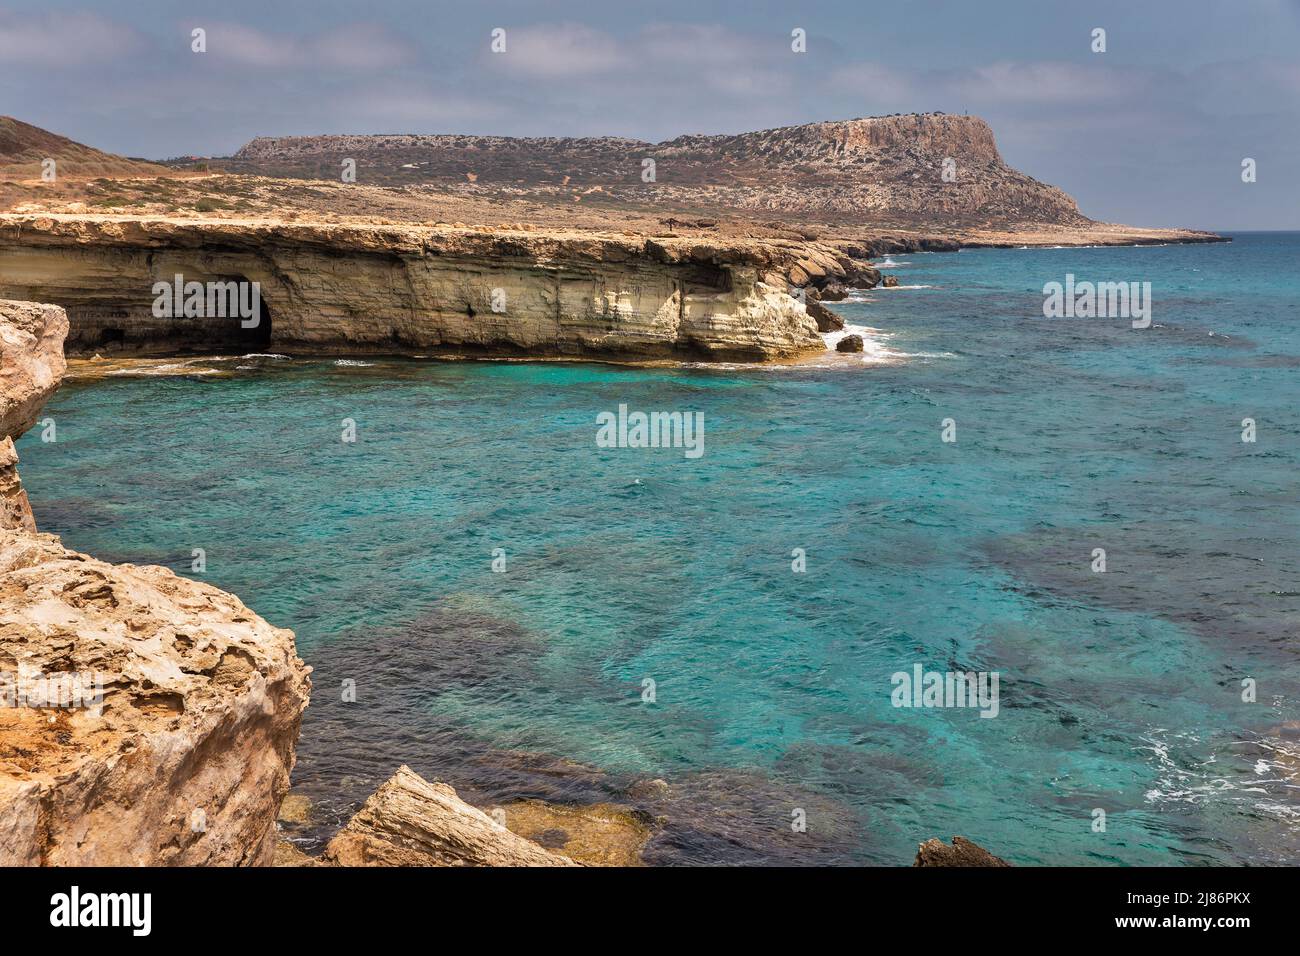 Seascape Cape Greco Peninsula Park, Cipro. E' una penisola montagnosa con un parco nazionale, sentieri di roccia, una laguna turchese e un ponte di pietra naturale Foto Stock